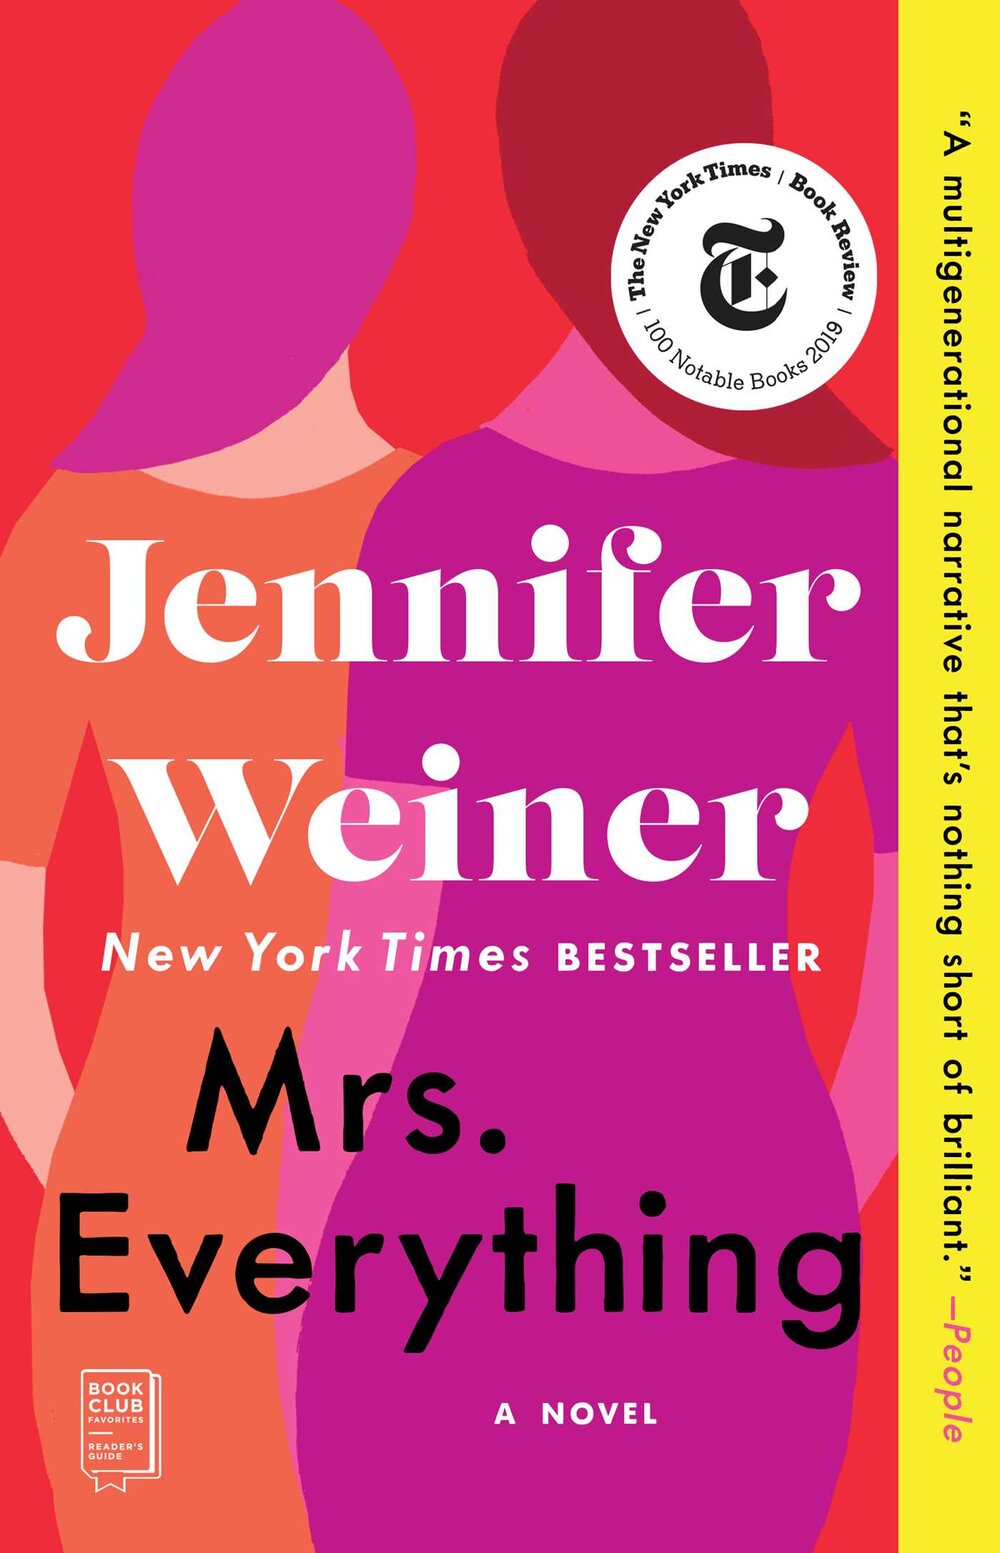 “Mrs. Everything” by Jennifer Weiner 